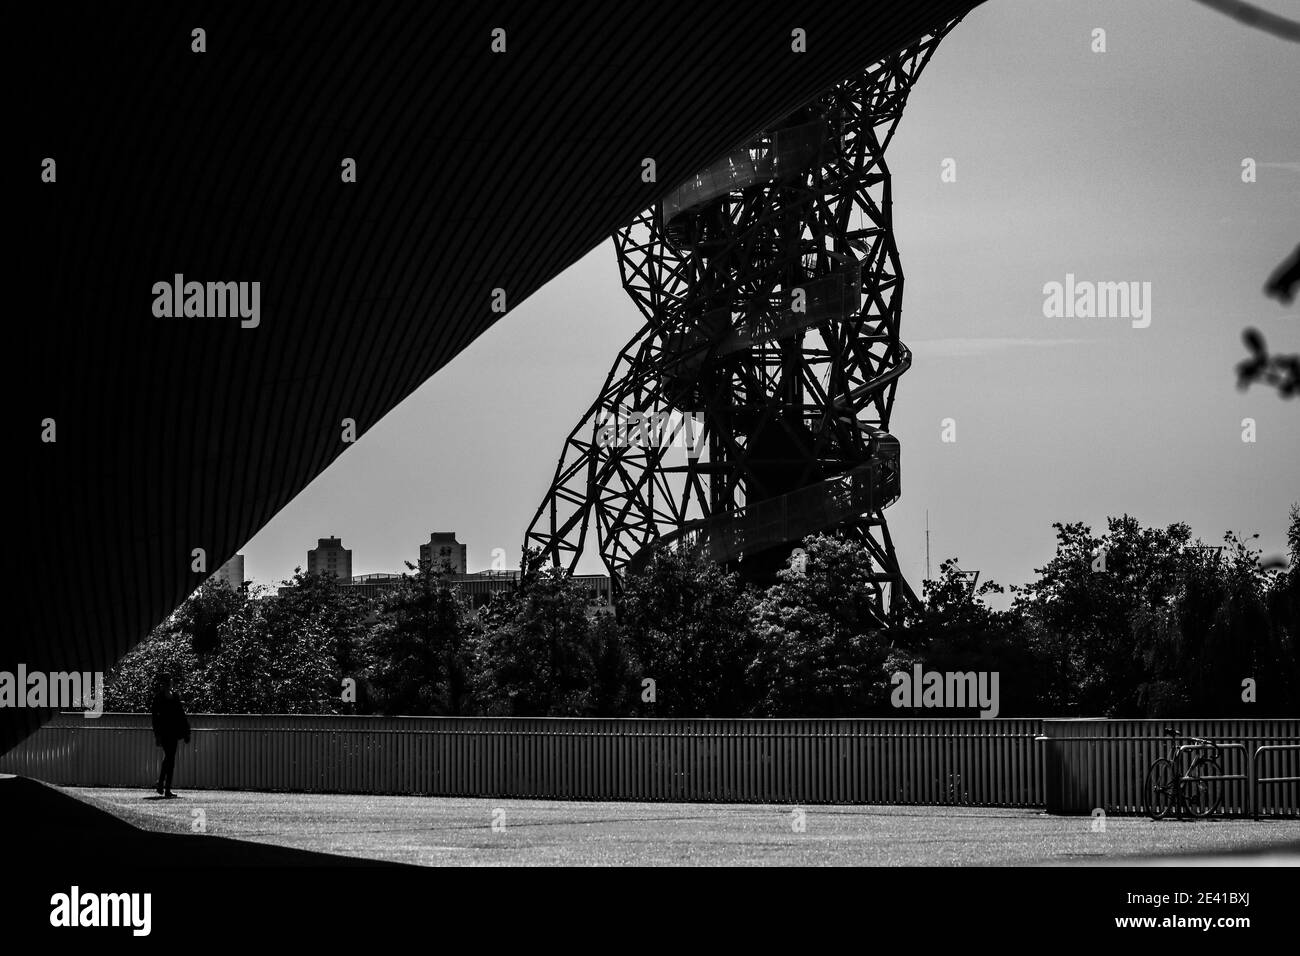 Una sola persona si erge, dwarfed dal centro acquatico olimpico londinese, con la torre dell'orbita ArcelorMittal sullo sfondo. Foto Stock